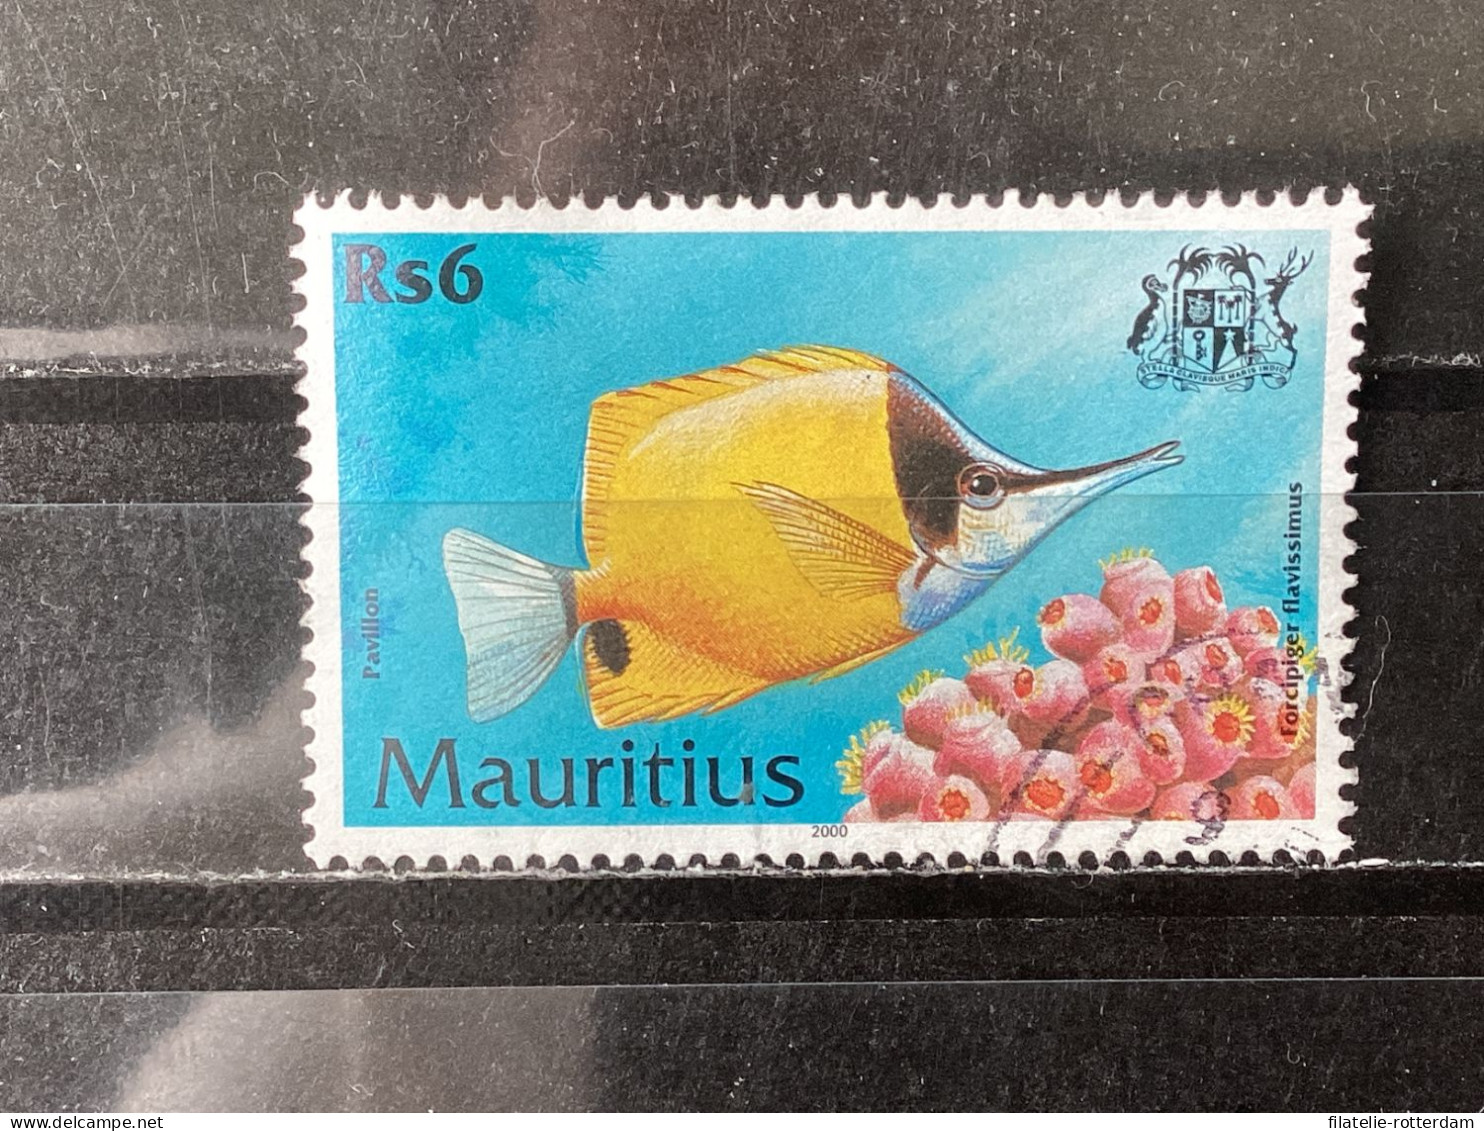 Mauritius - Fish (6) 2000 - Mauritius (1968-...)